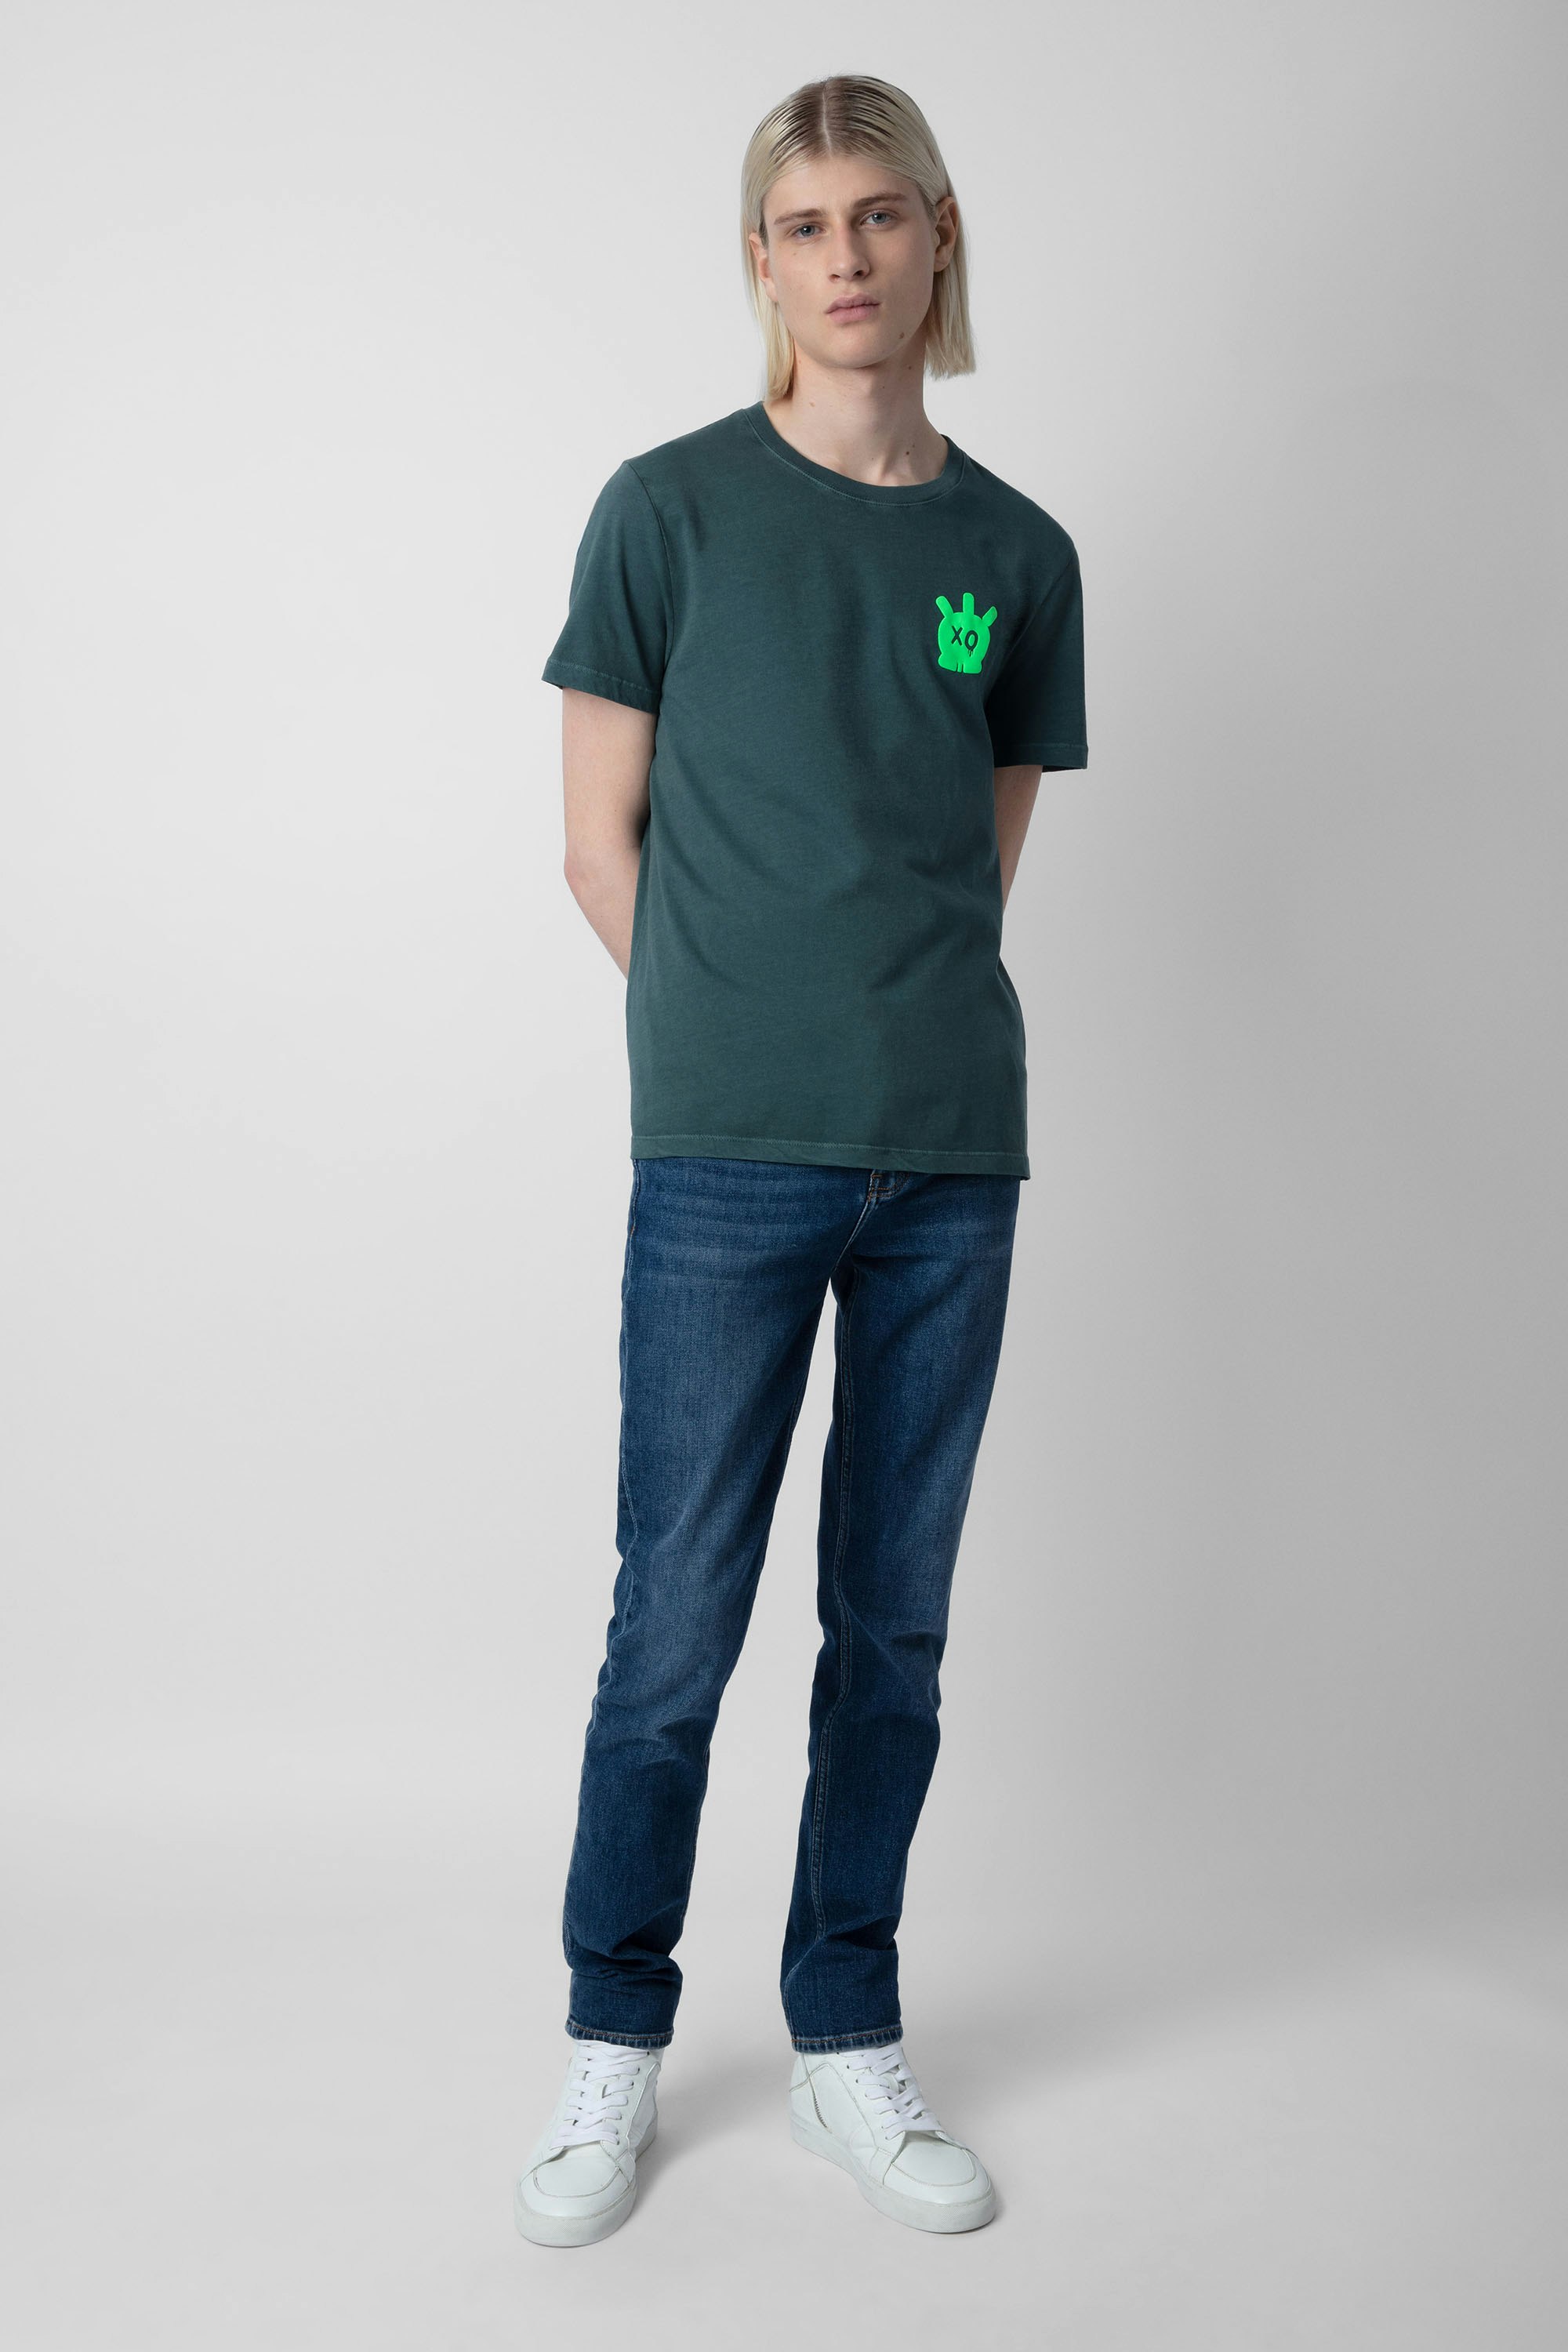 T-shirt Tommy Skull - T-shirt en coton vert foncé orné d'un motif en relief Skull XO sur la poitrine.